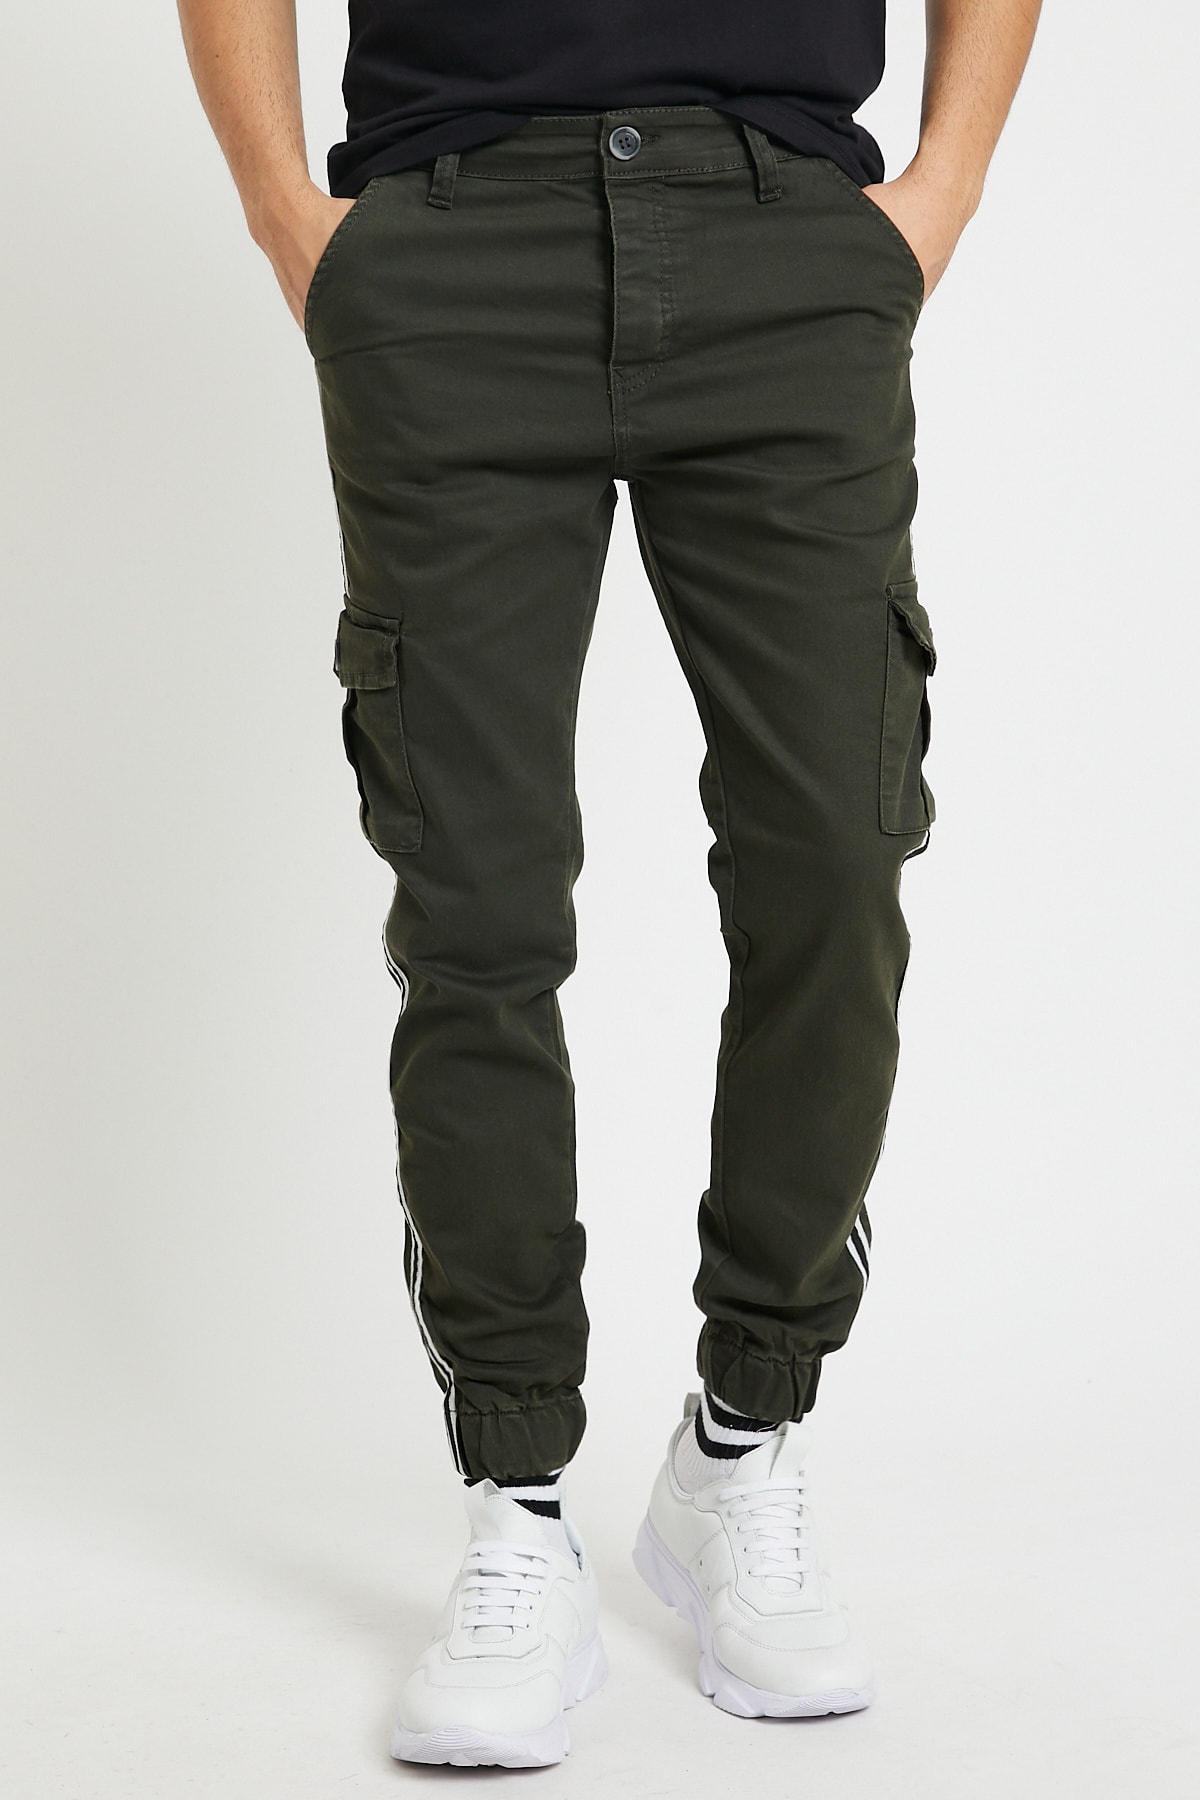 Serseri Jeans Erkek Haki Renk Yandan Cepli Şerit Detaylı Jogger Paçası Lastikli Pantolon